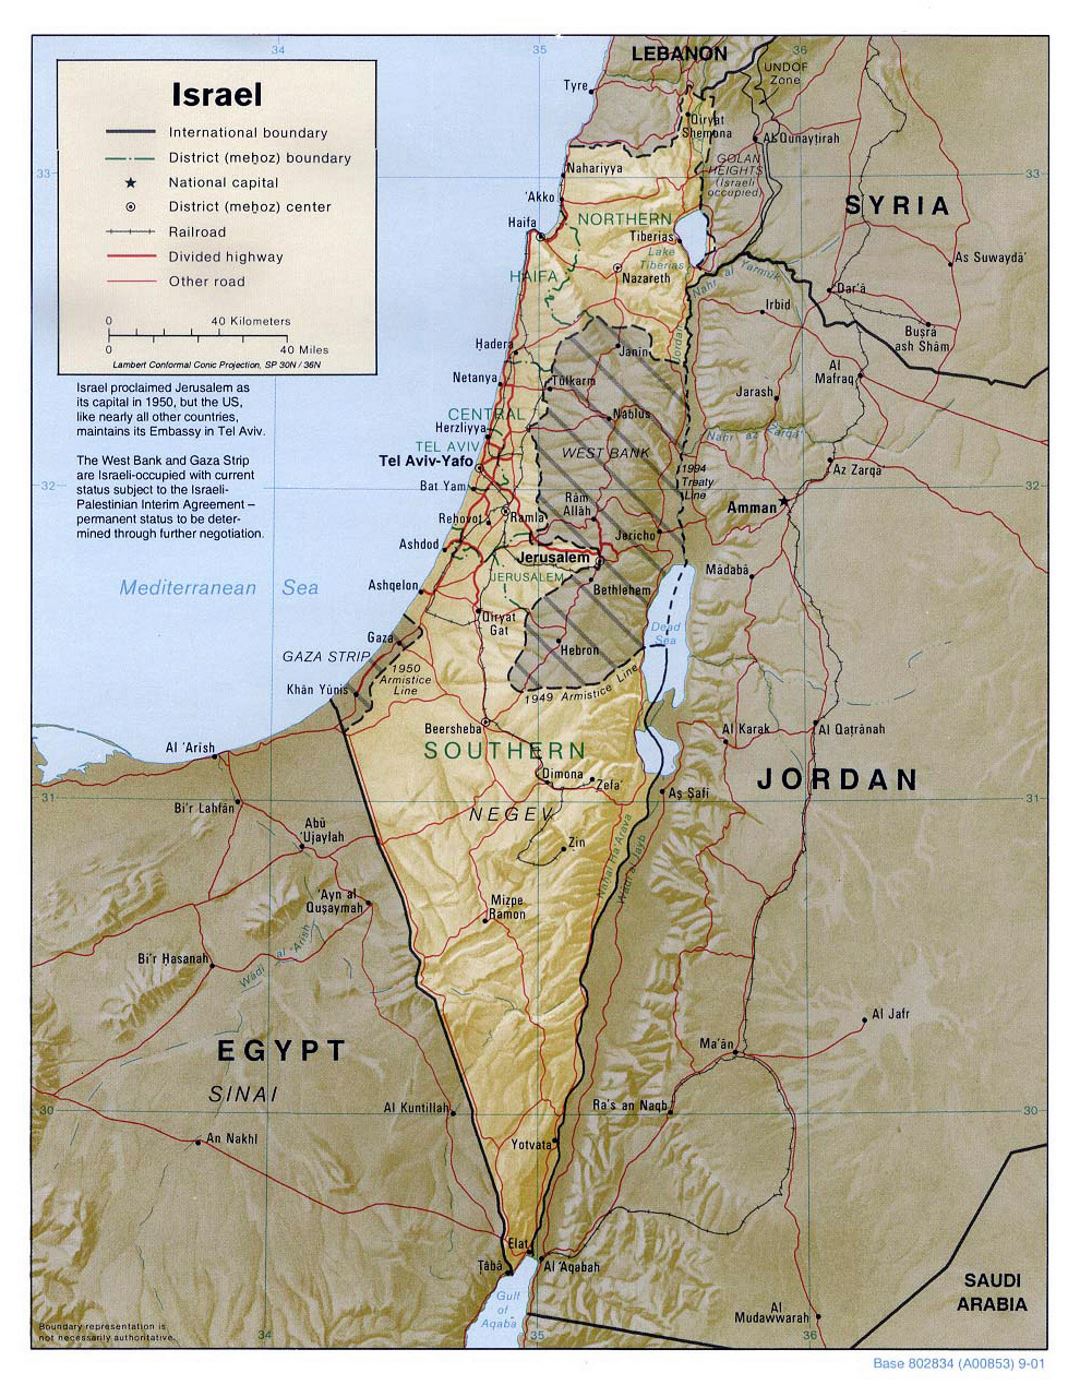 Detallado mapa político y administrativo de Israel con socorro, carreteras, ferrocarriles y principales ciudades - 2001